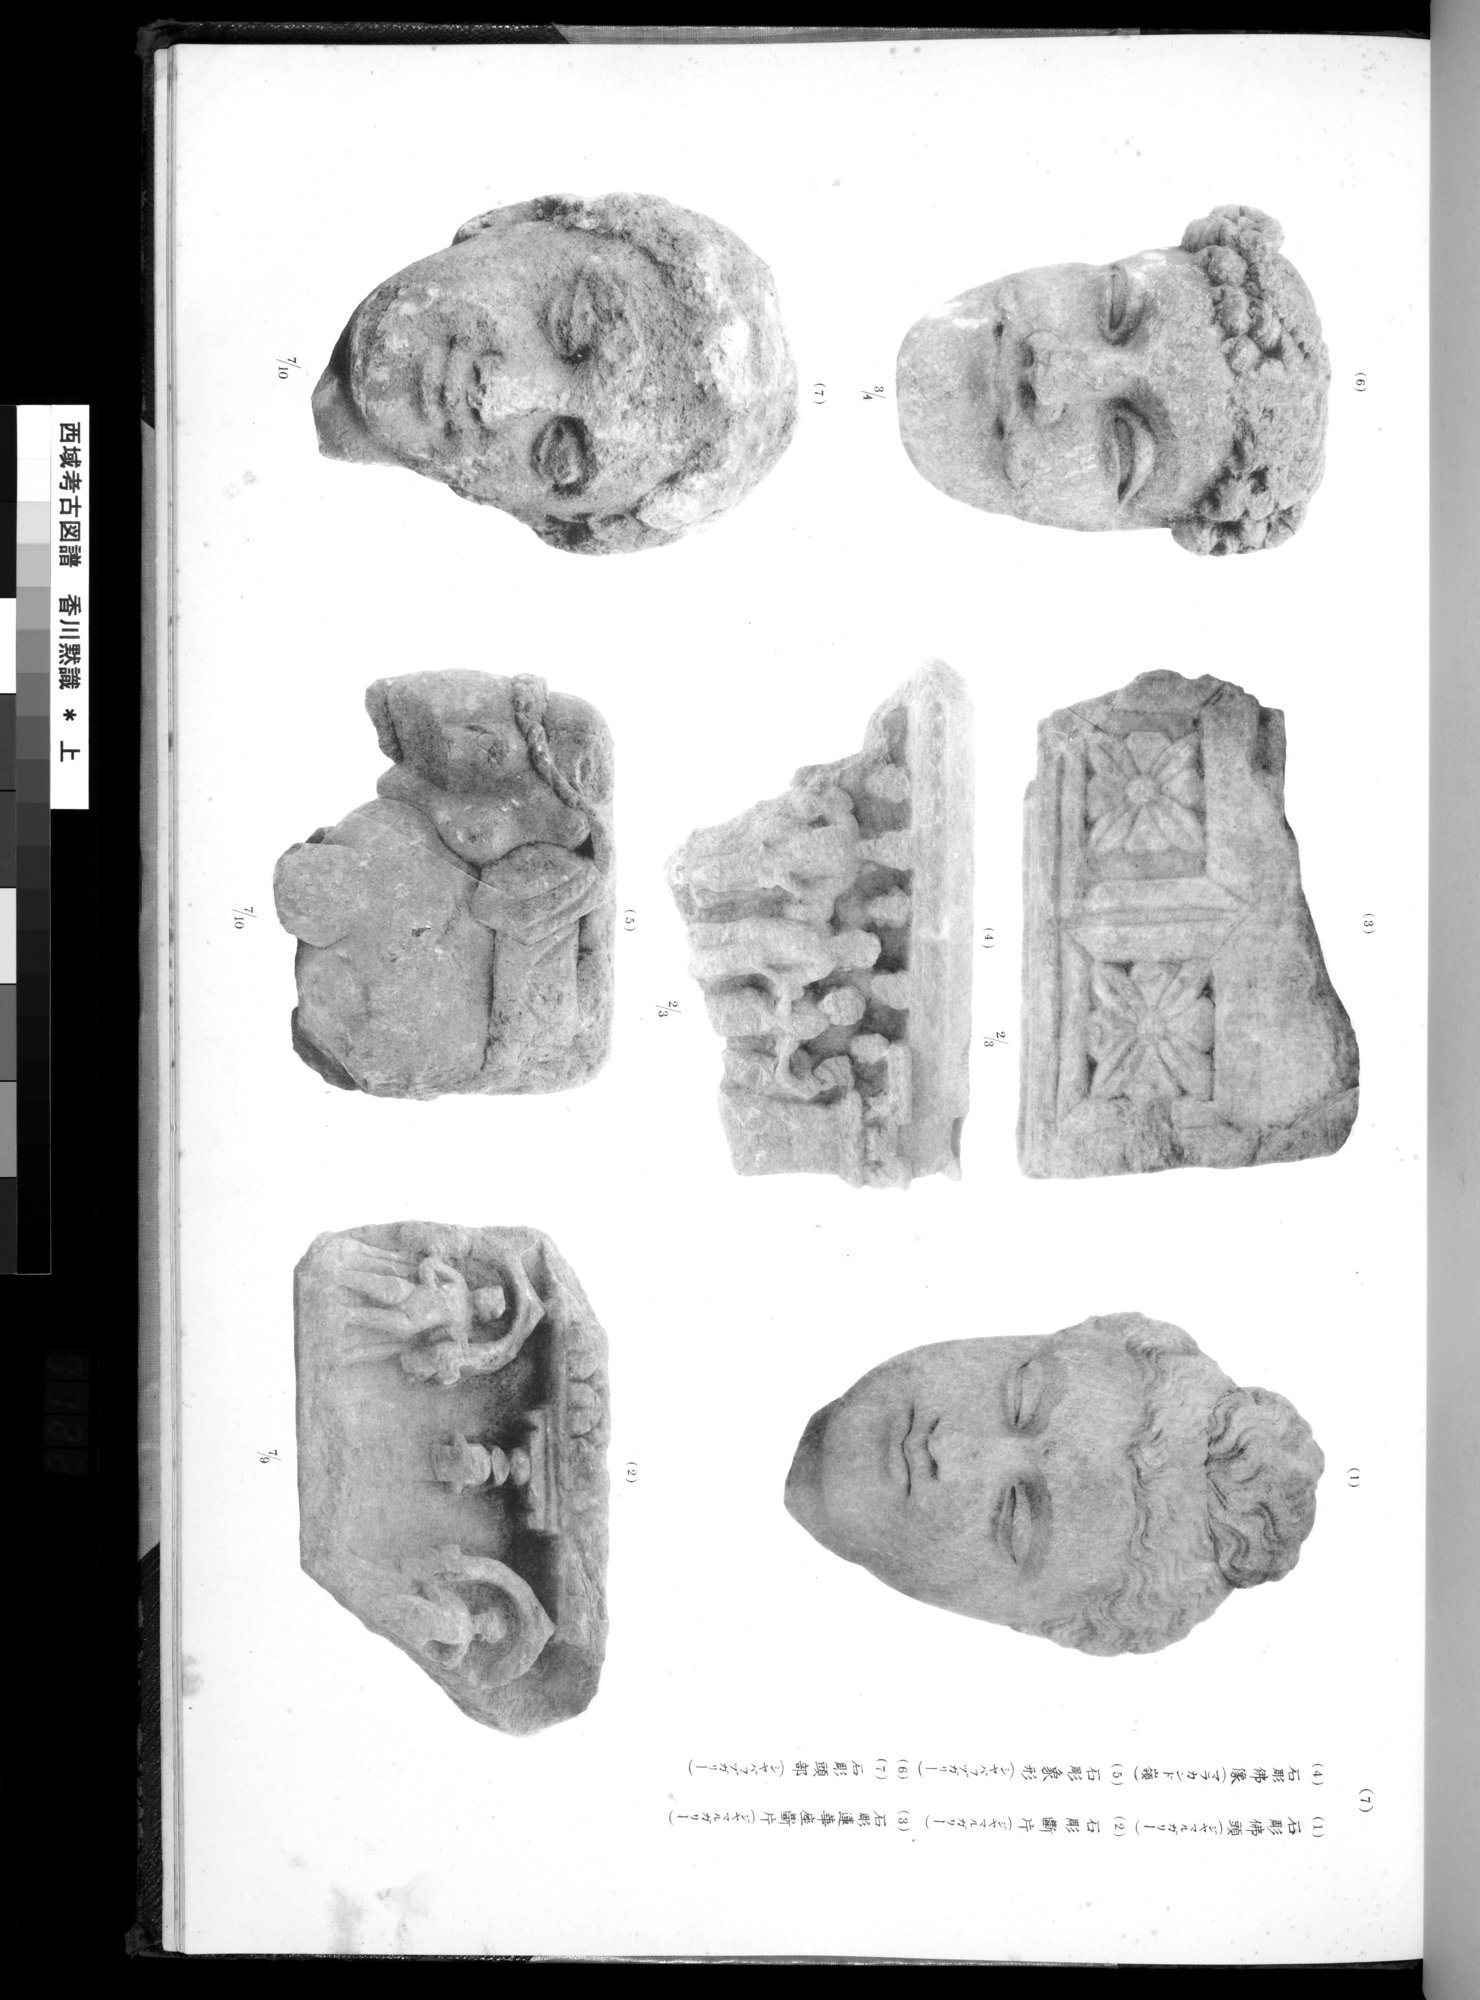 西域考古図譜 : vol.1 / 245 ページ（白黒高解像度画像）